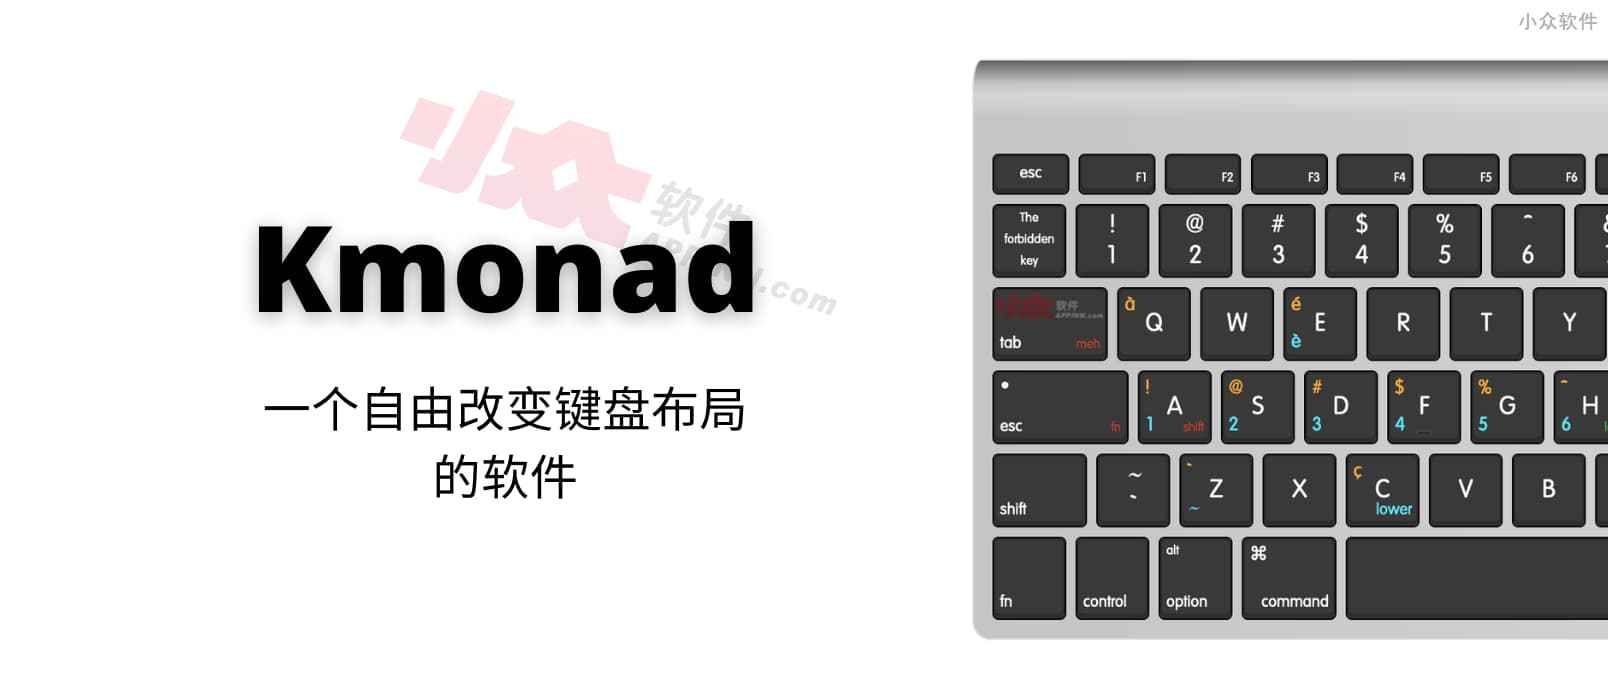 Kmonad，一个自由改变键盘布局的软件